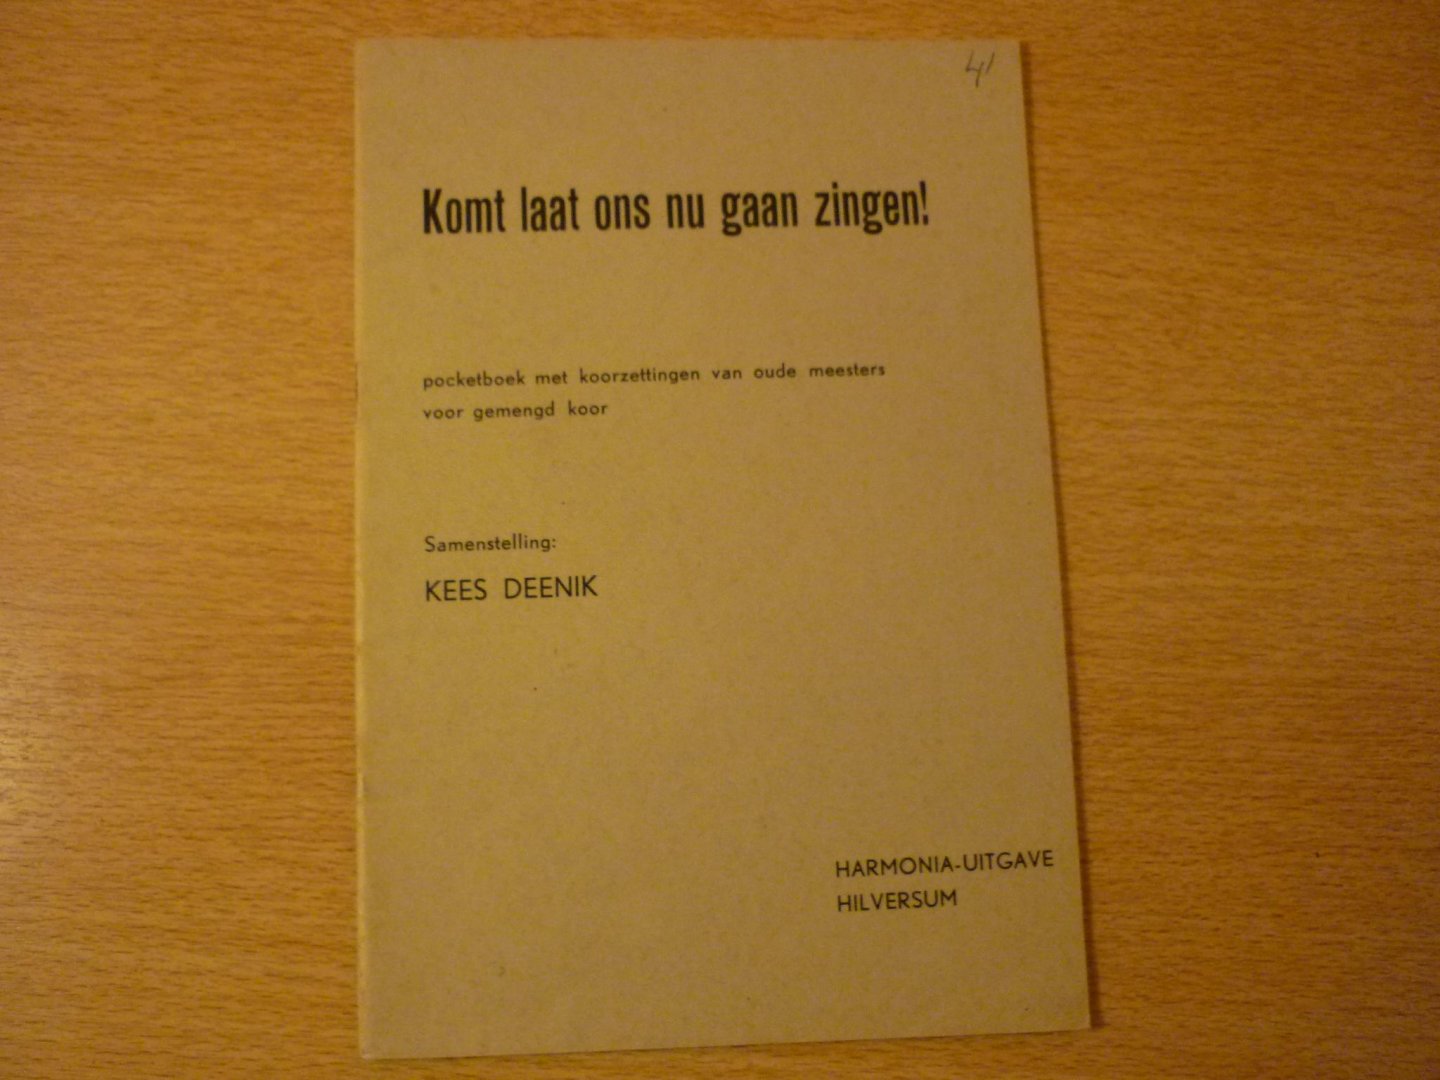 Deenik; Kees - Komt laat ons nu gaan zingen!; Pocketboek met koorzettingen van oude meesters voor gemengd koor